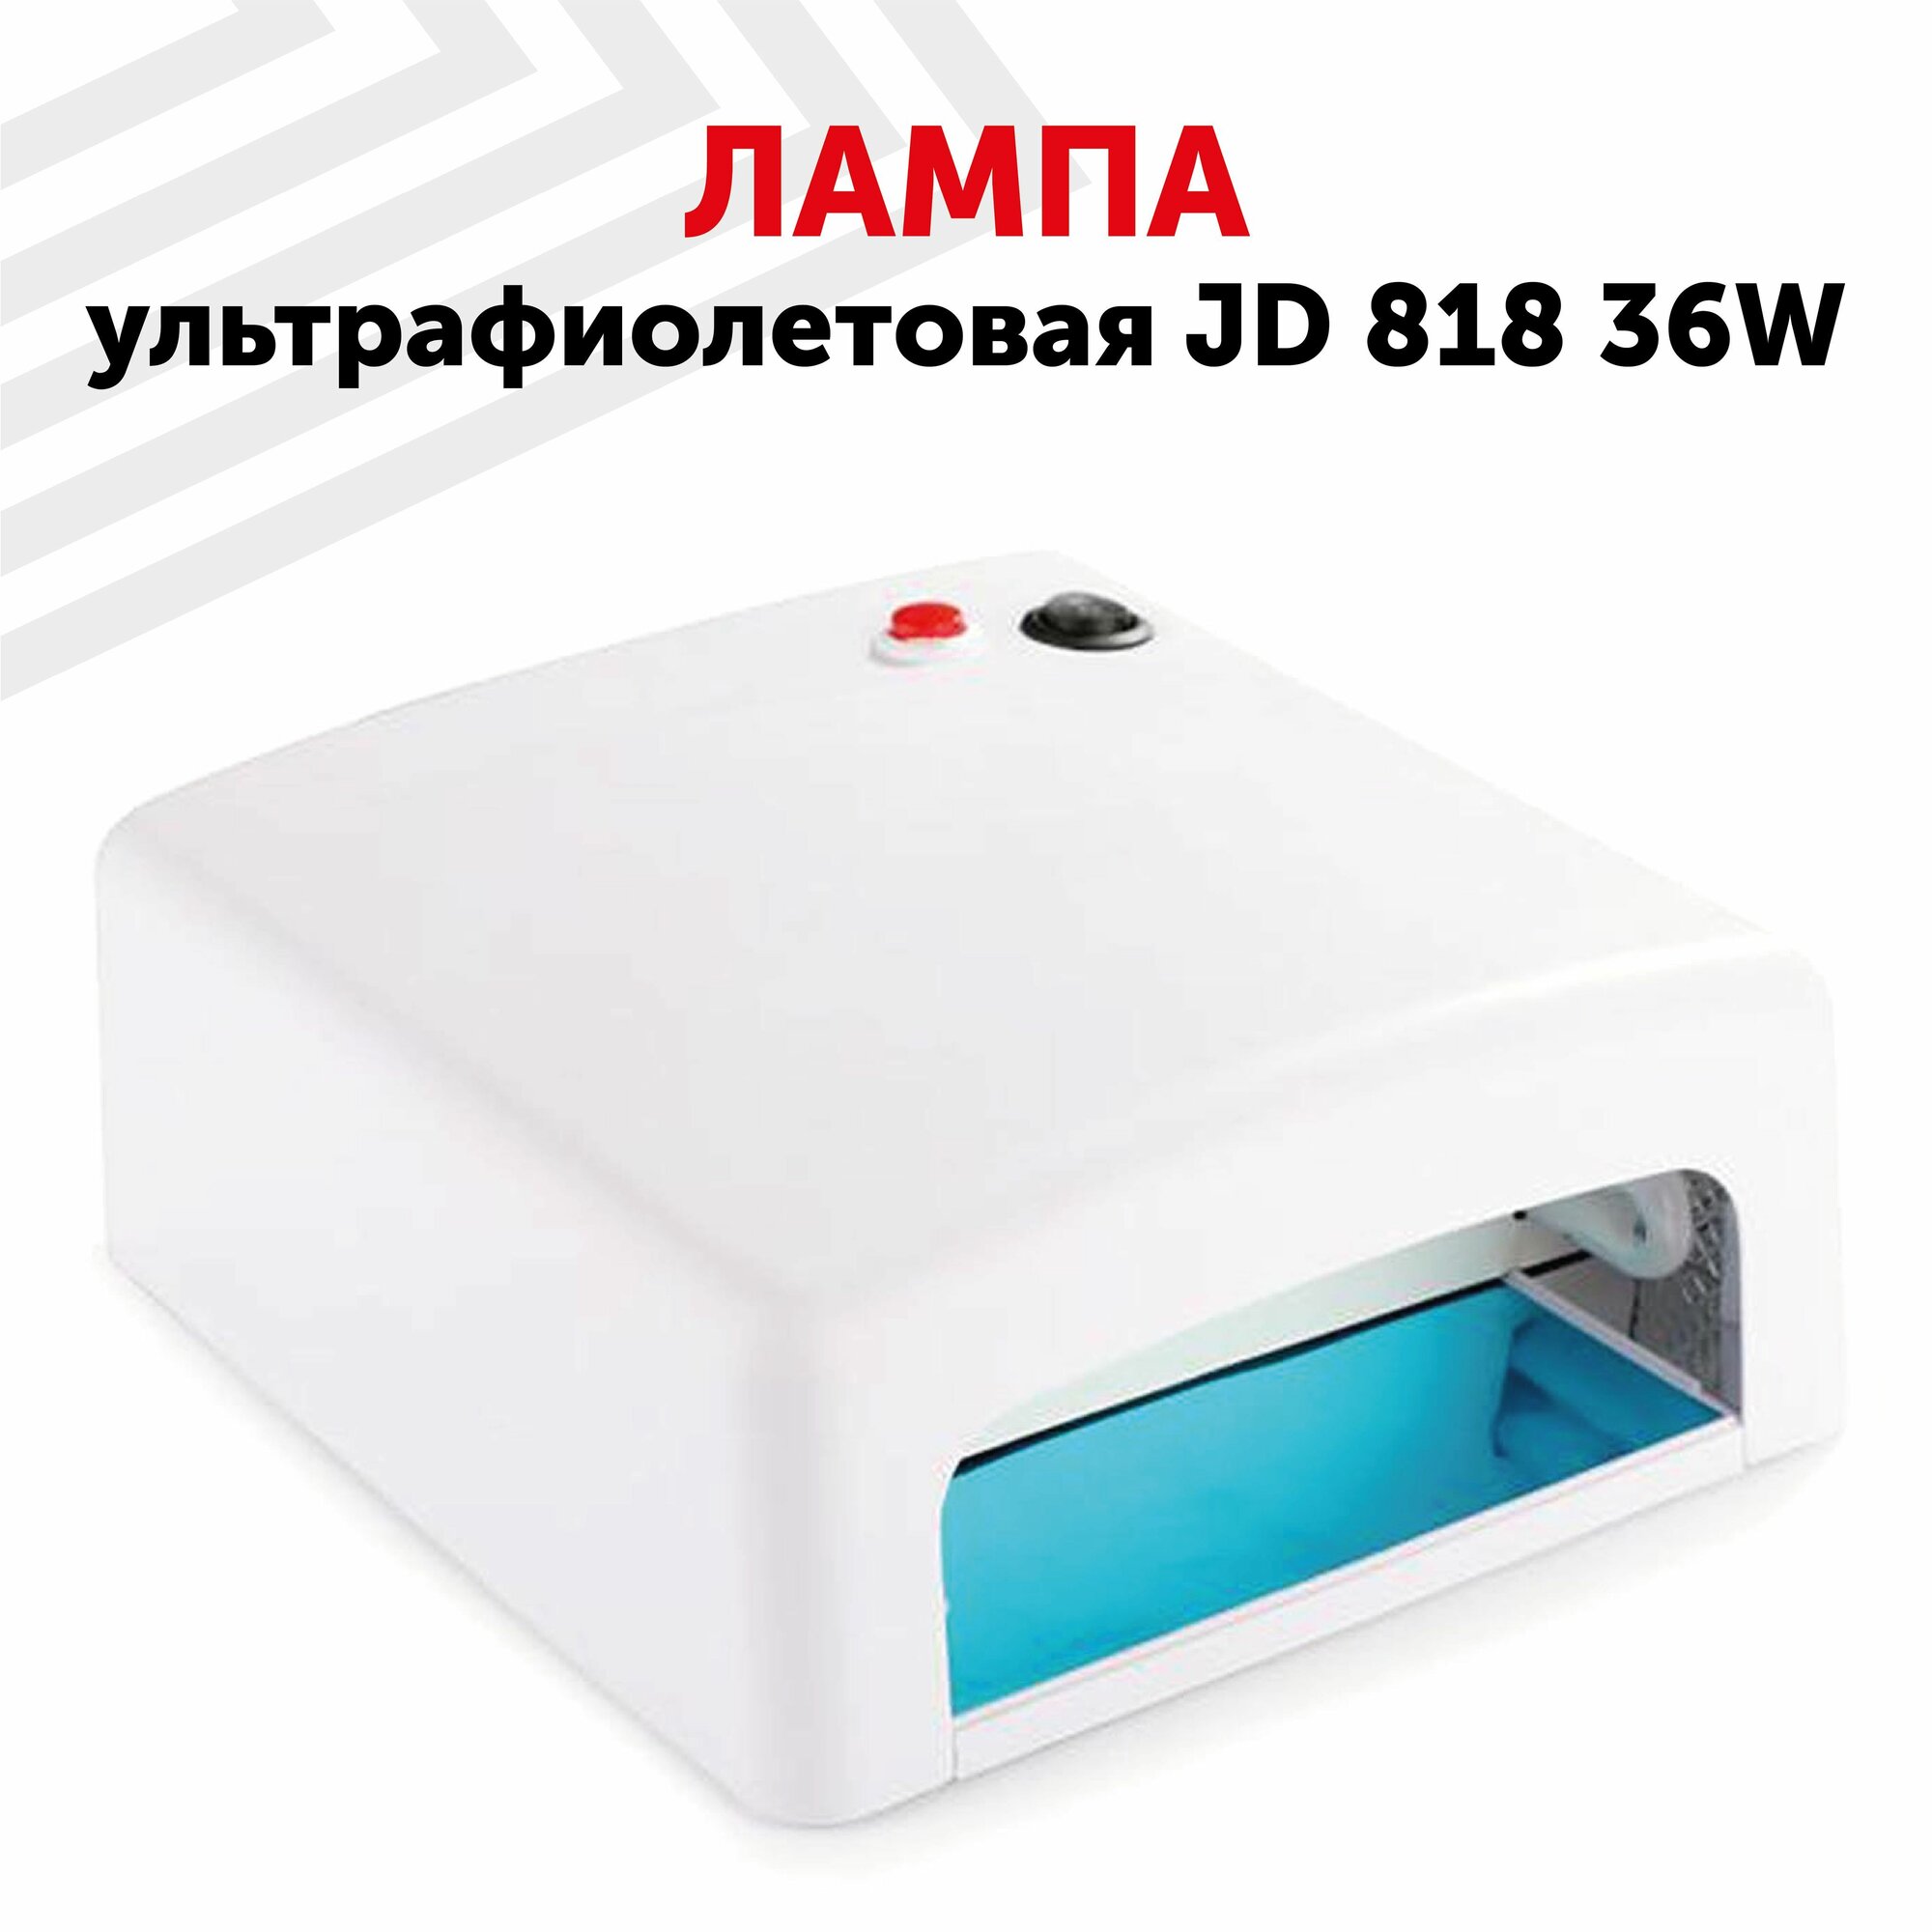 Ультрафиолетовая лампа JD 818 36W